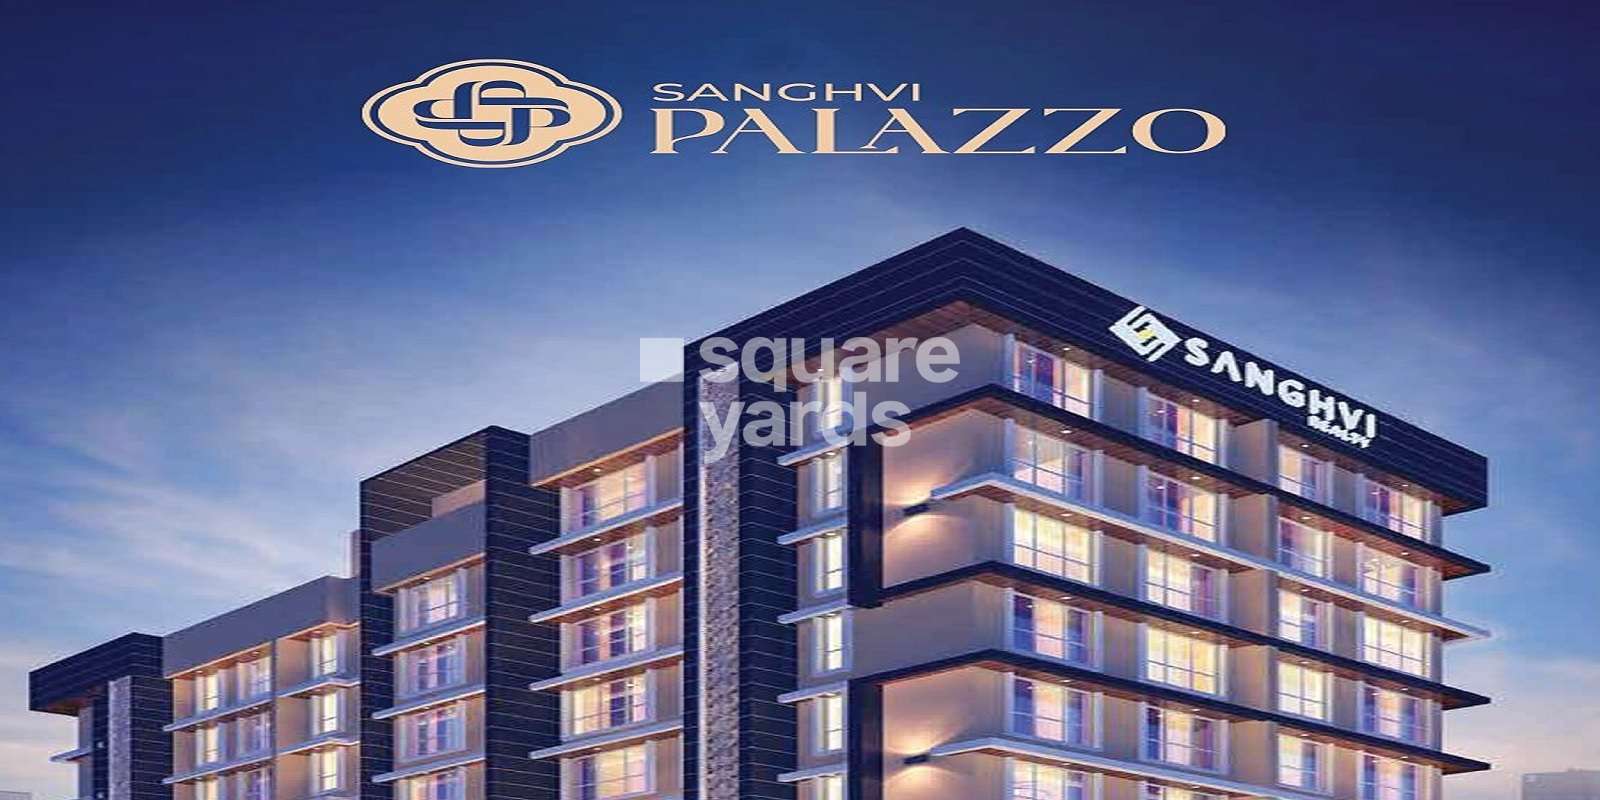 Sanghvi Palazzo Cover Image